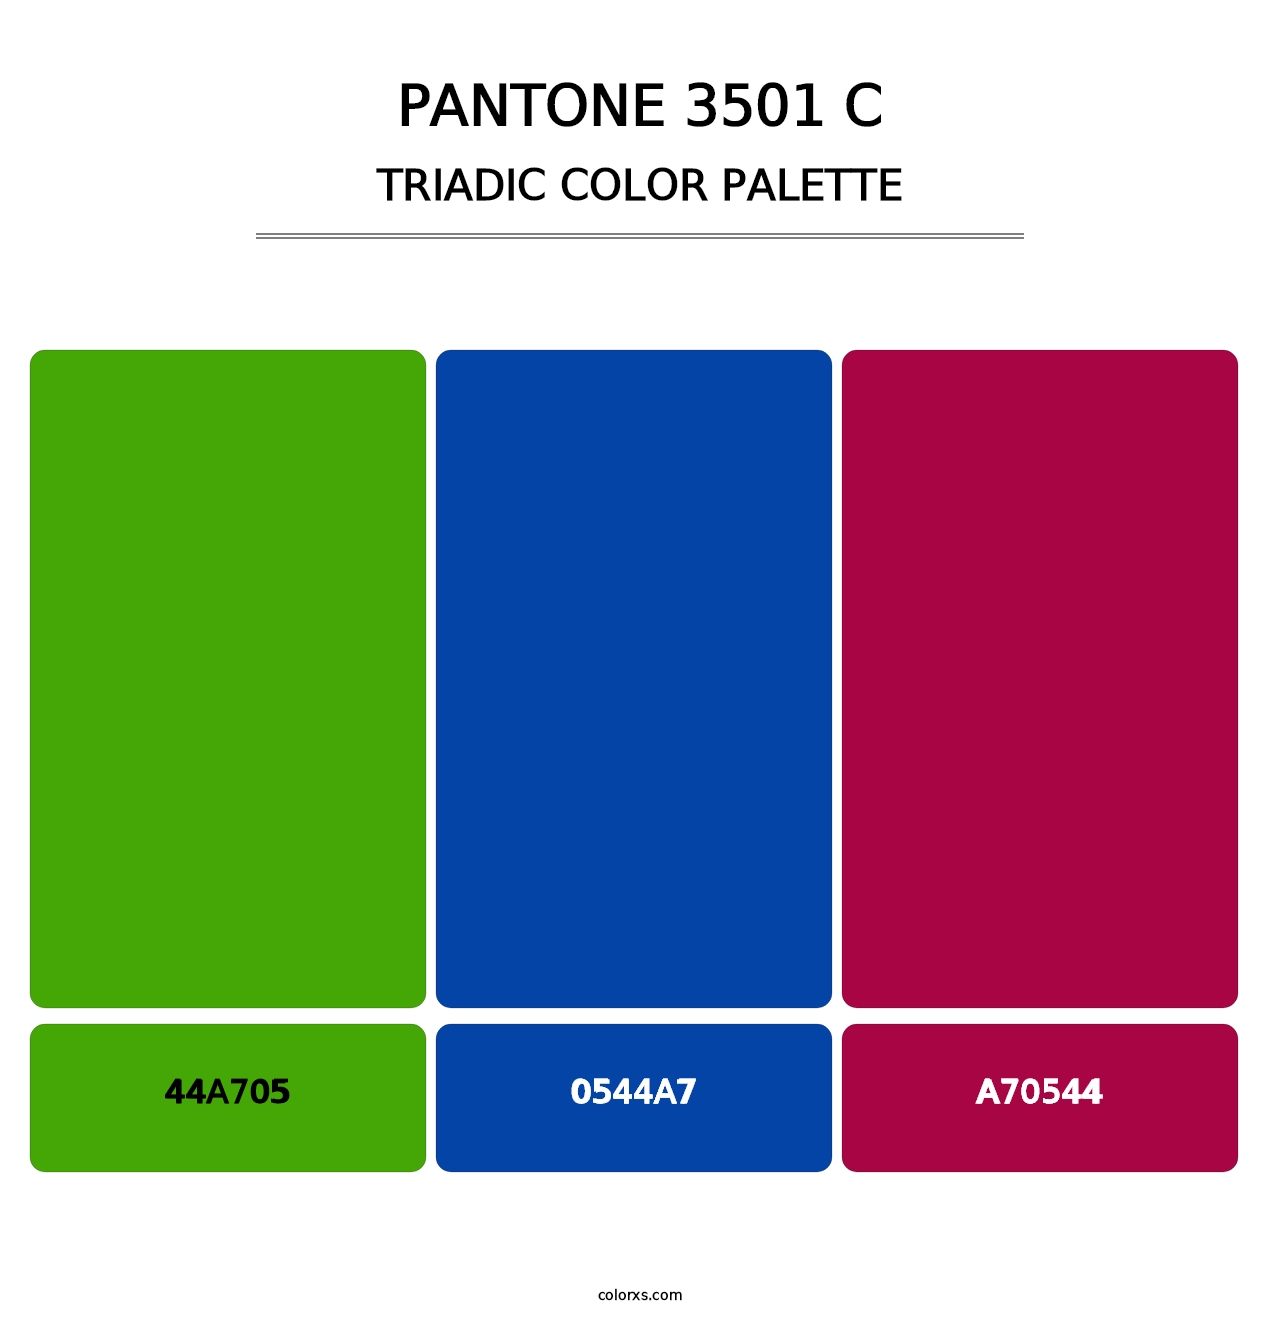 PANTONE 3501 C - Triadic Color Palette